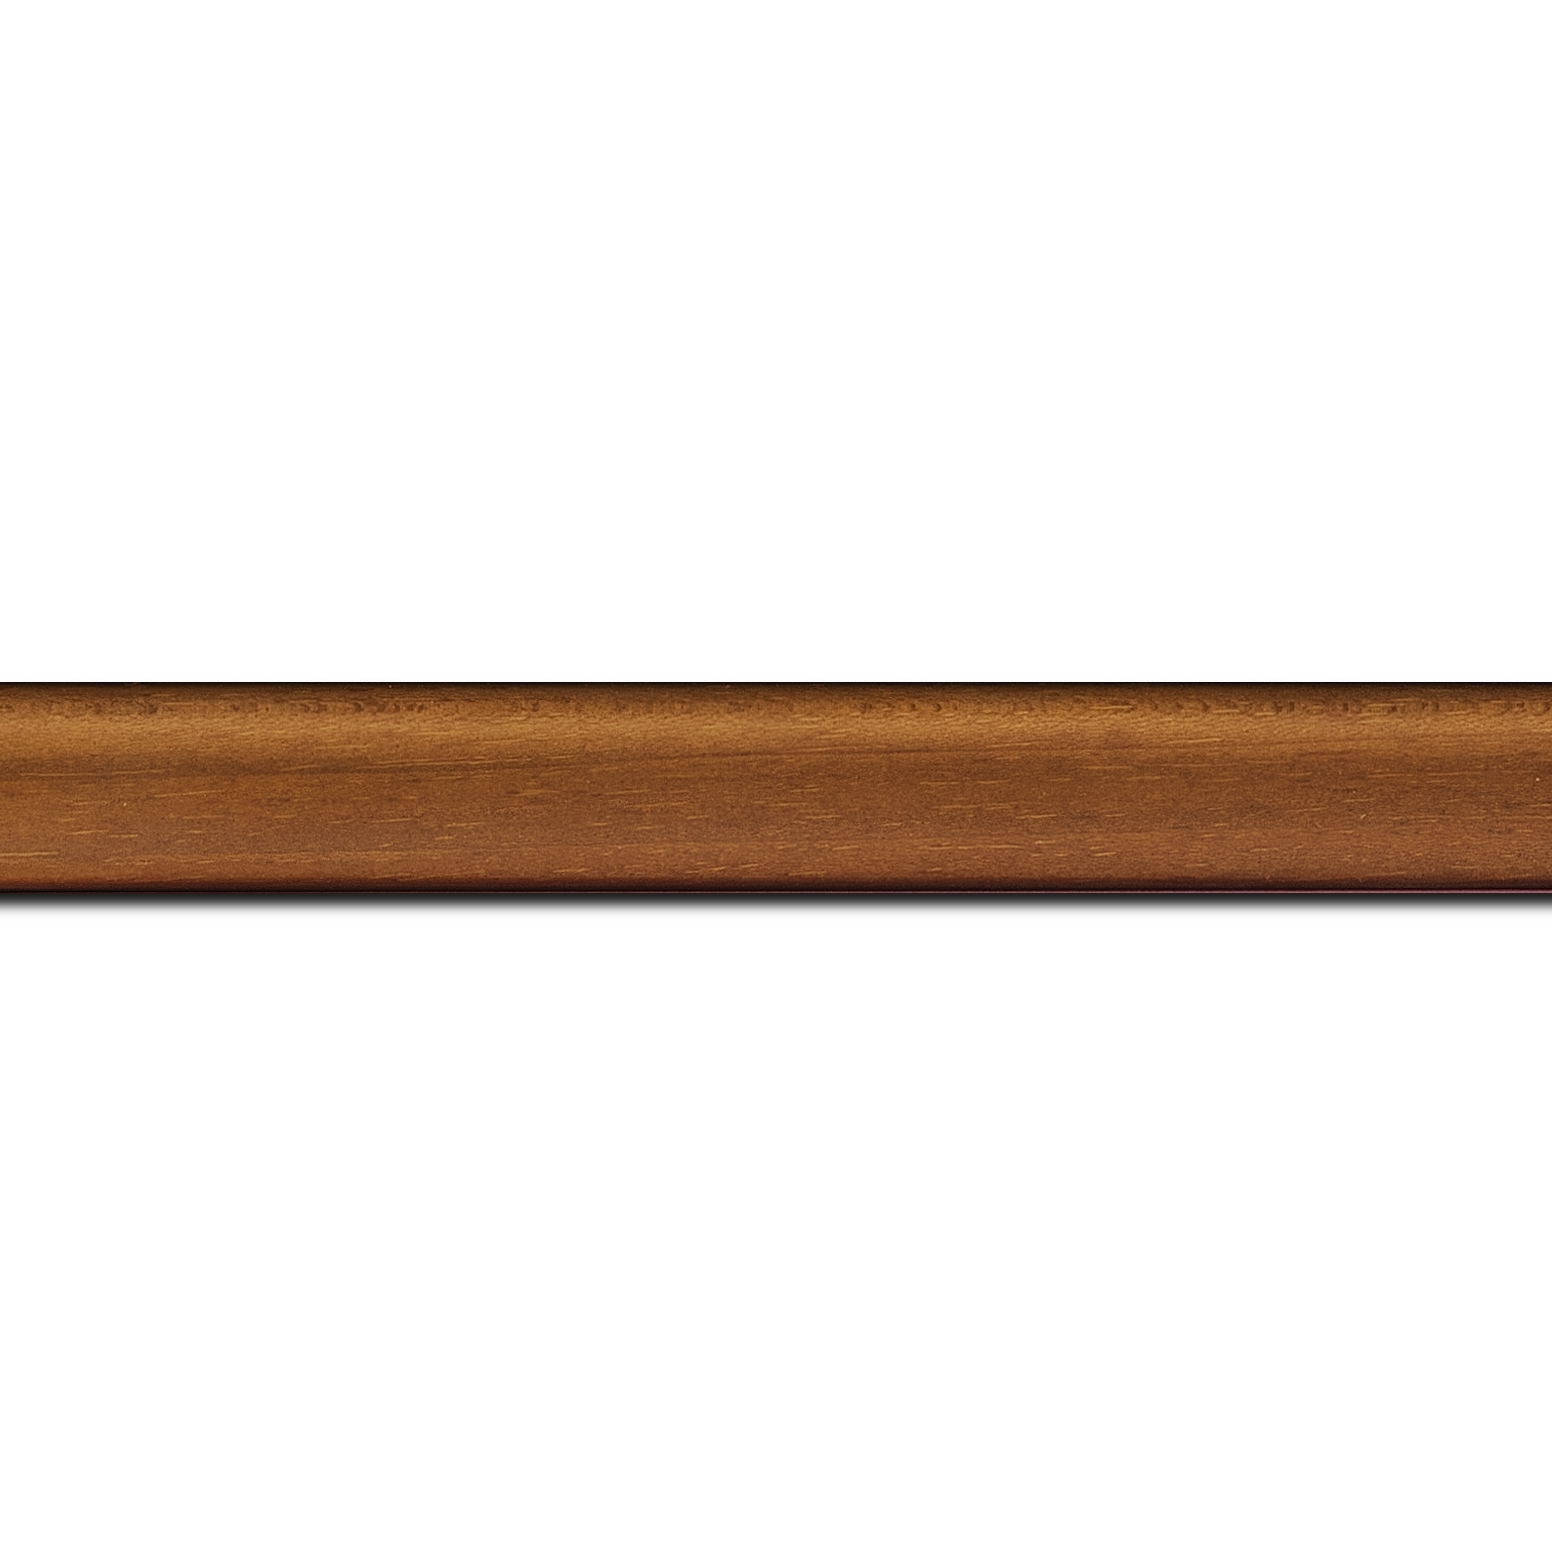 Pack par 12m, bois profil incurvé largeur 2.1cm couleur marron clair satiné (longueur baguette pouvant varier entre 2.40m et 3m selon arrivage des bois)